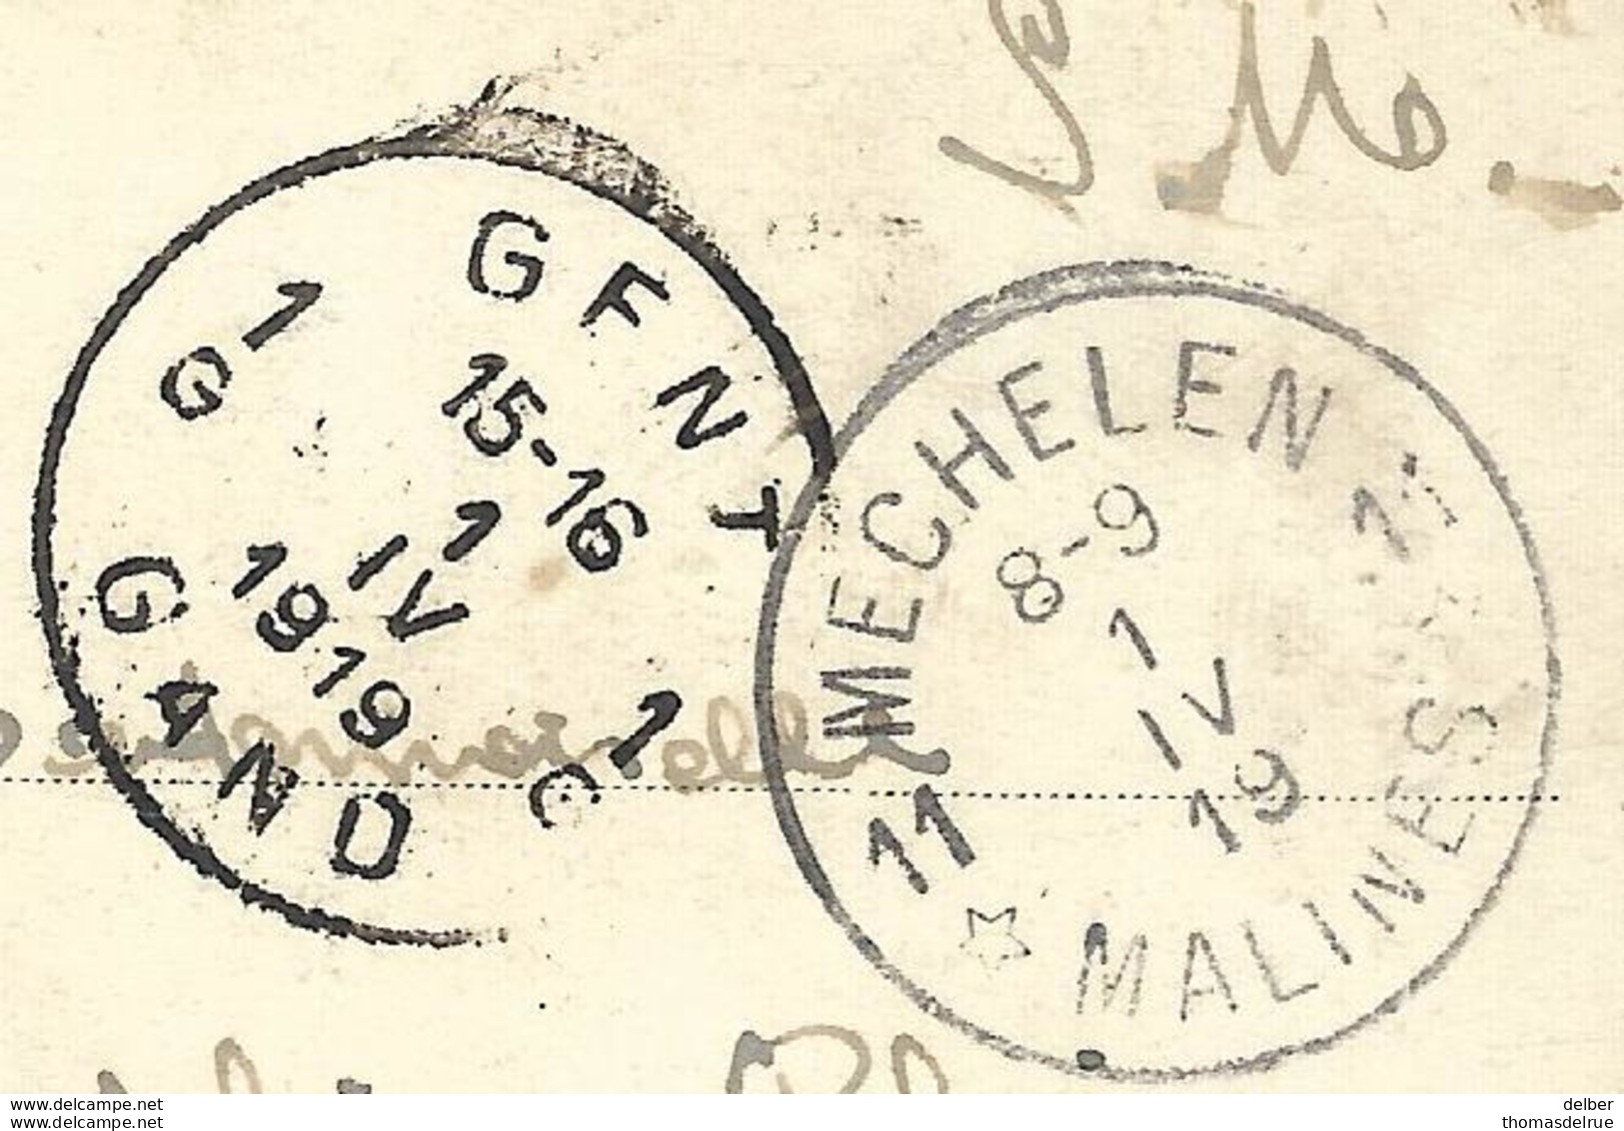 6ik-545: S.M. 11* MECHELEN 11* MALINES 8-9 1 IV 19 > Gand /pk Mechelen - Brusselse Poort... - Noodstempels (1919)